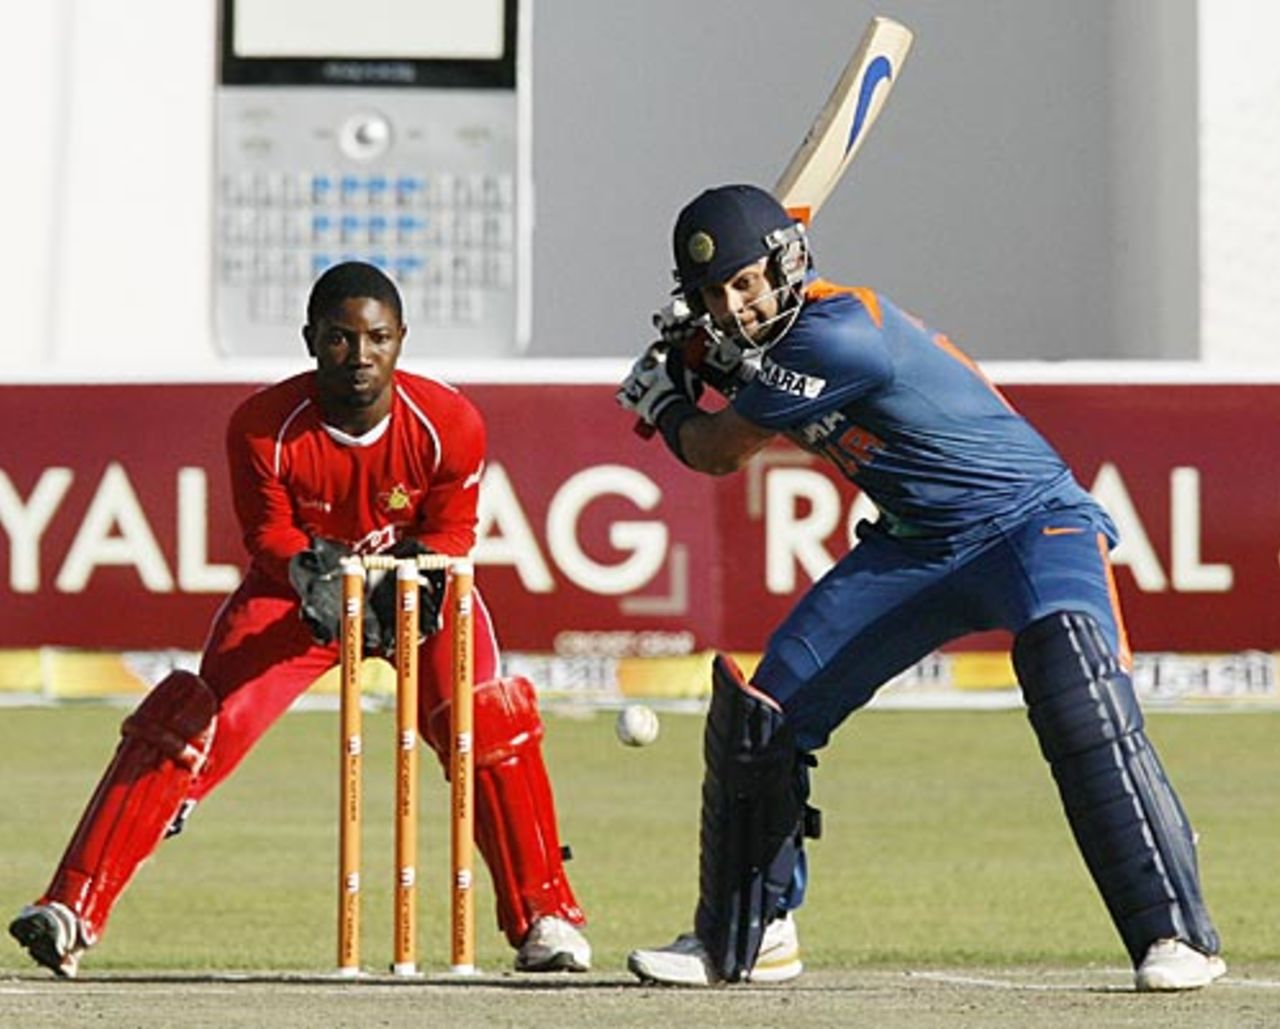 Virat Kohli winds up to smash it, Zimbabwe v India, 1st Twenty20, Harare, June 12, 2010